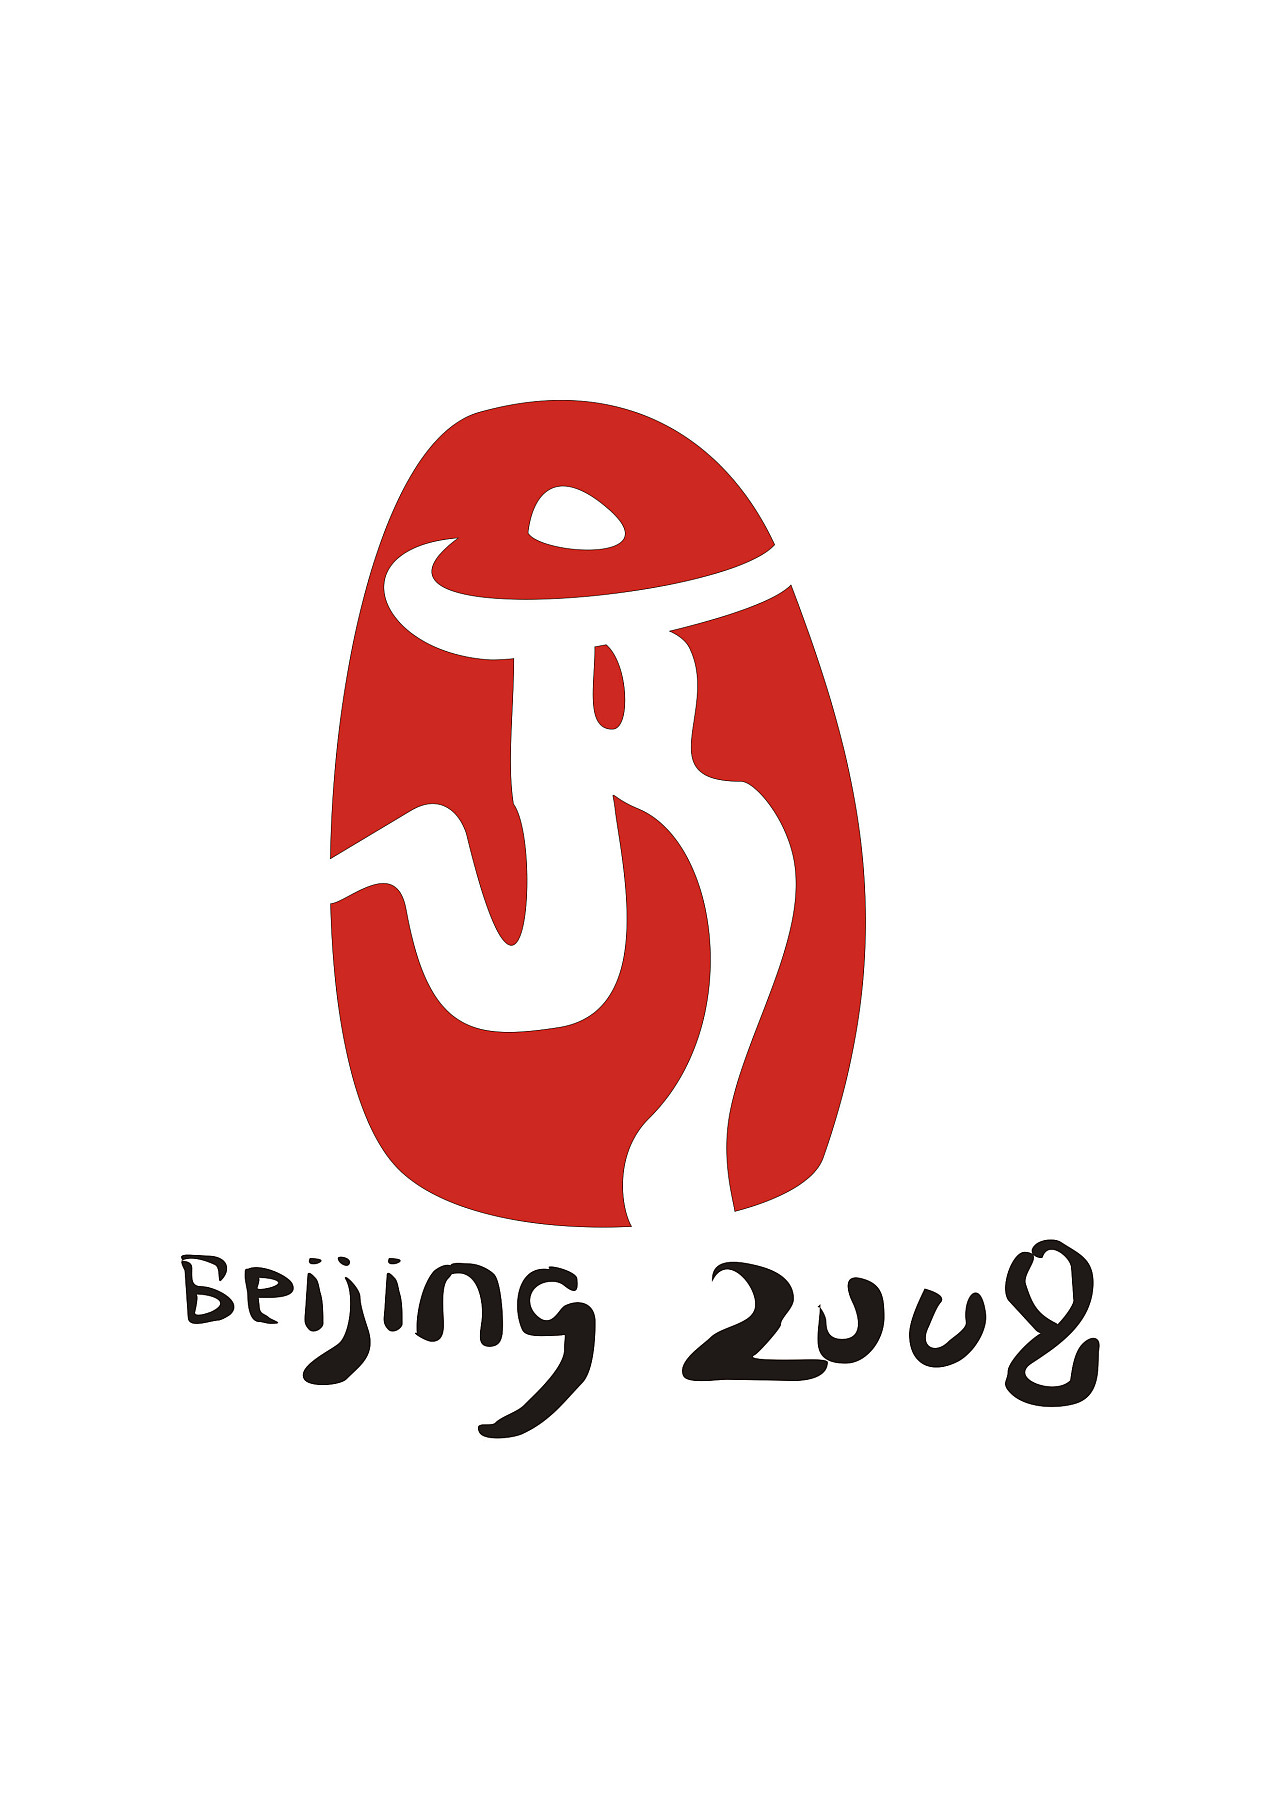 北京奥运会标志